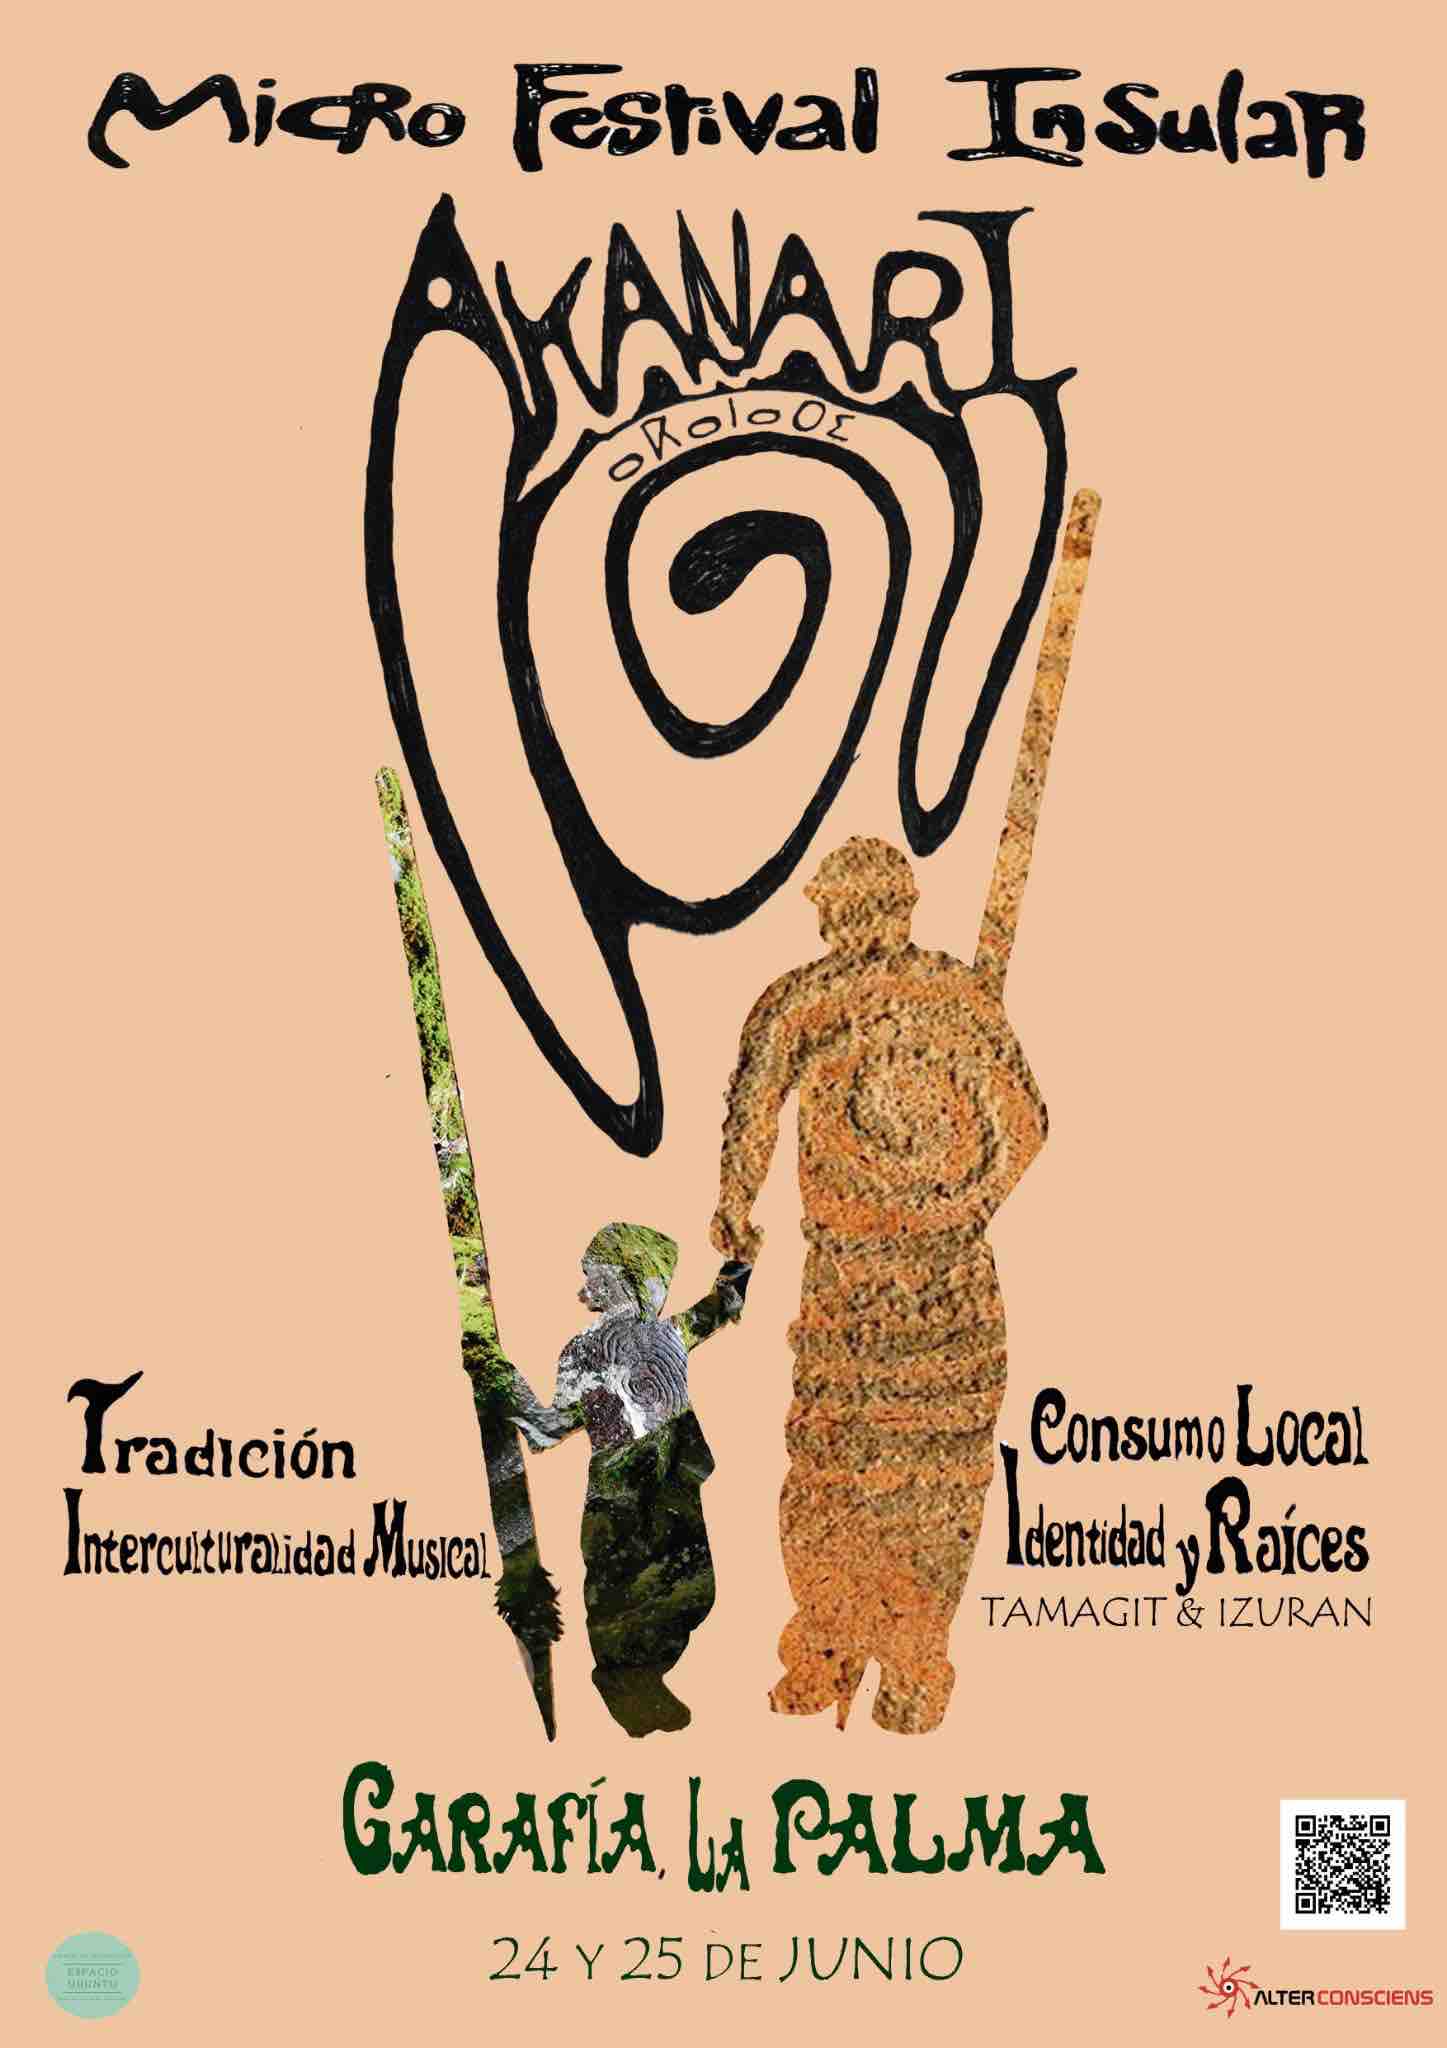 Micro Festival Insular Akanari: un encuentro mágico de tradiciones, cultura y naturaleza en La Palma